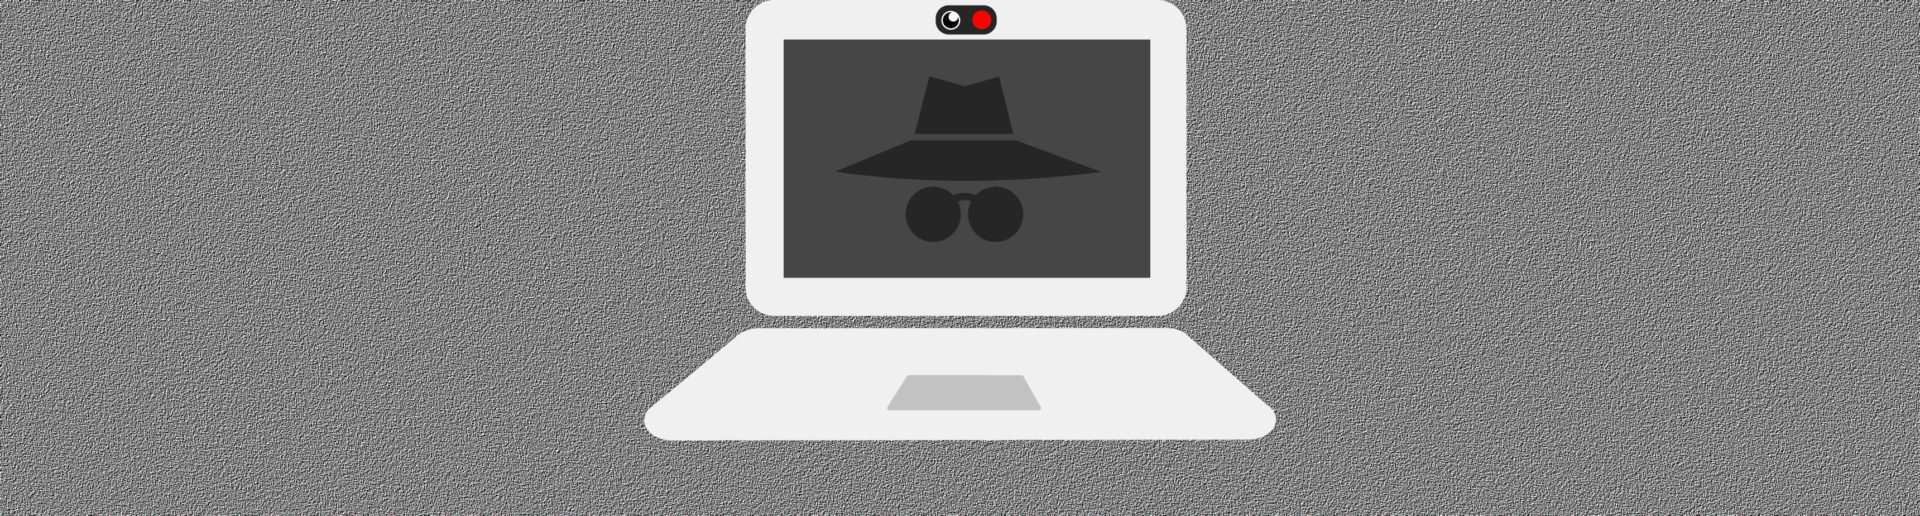 webcam hacker download